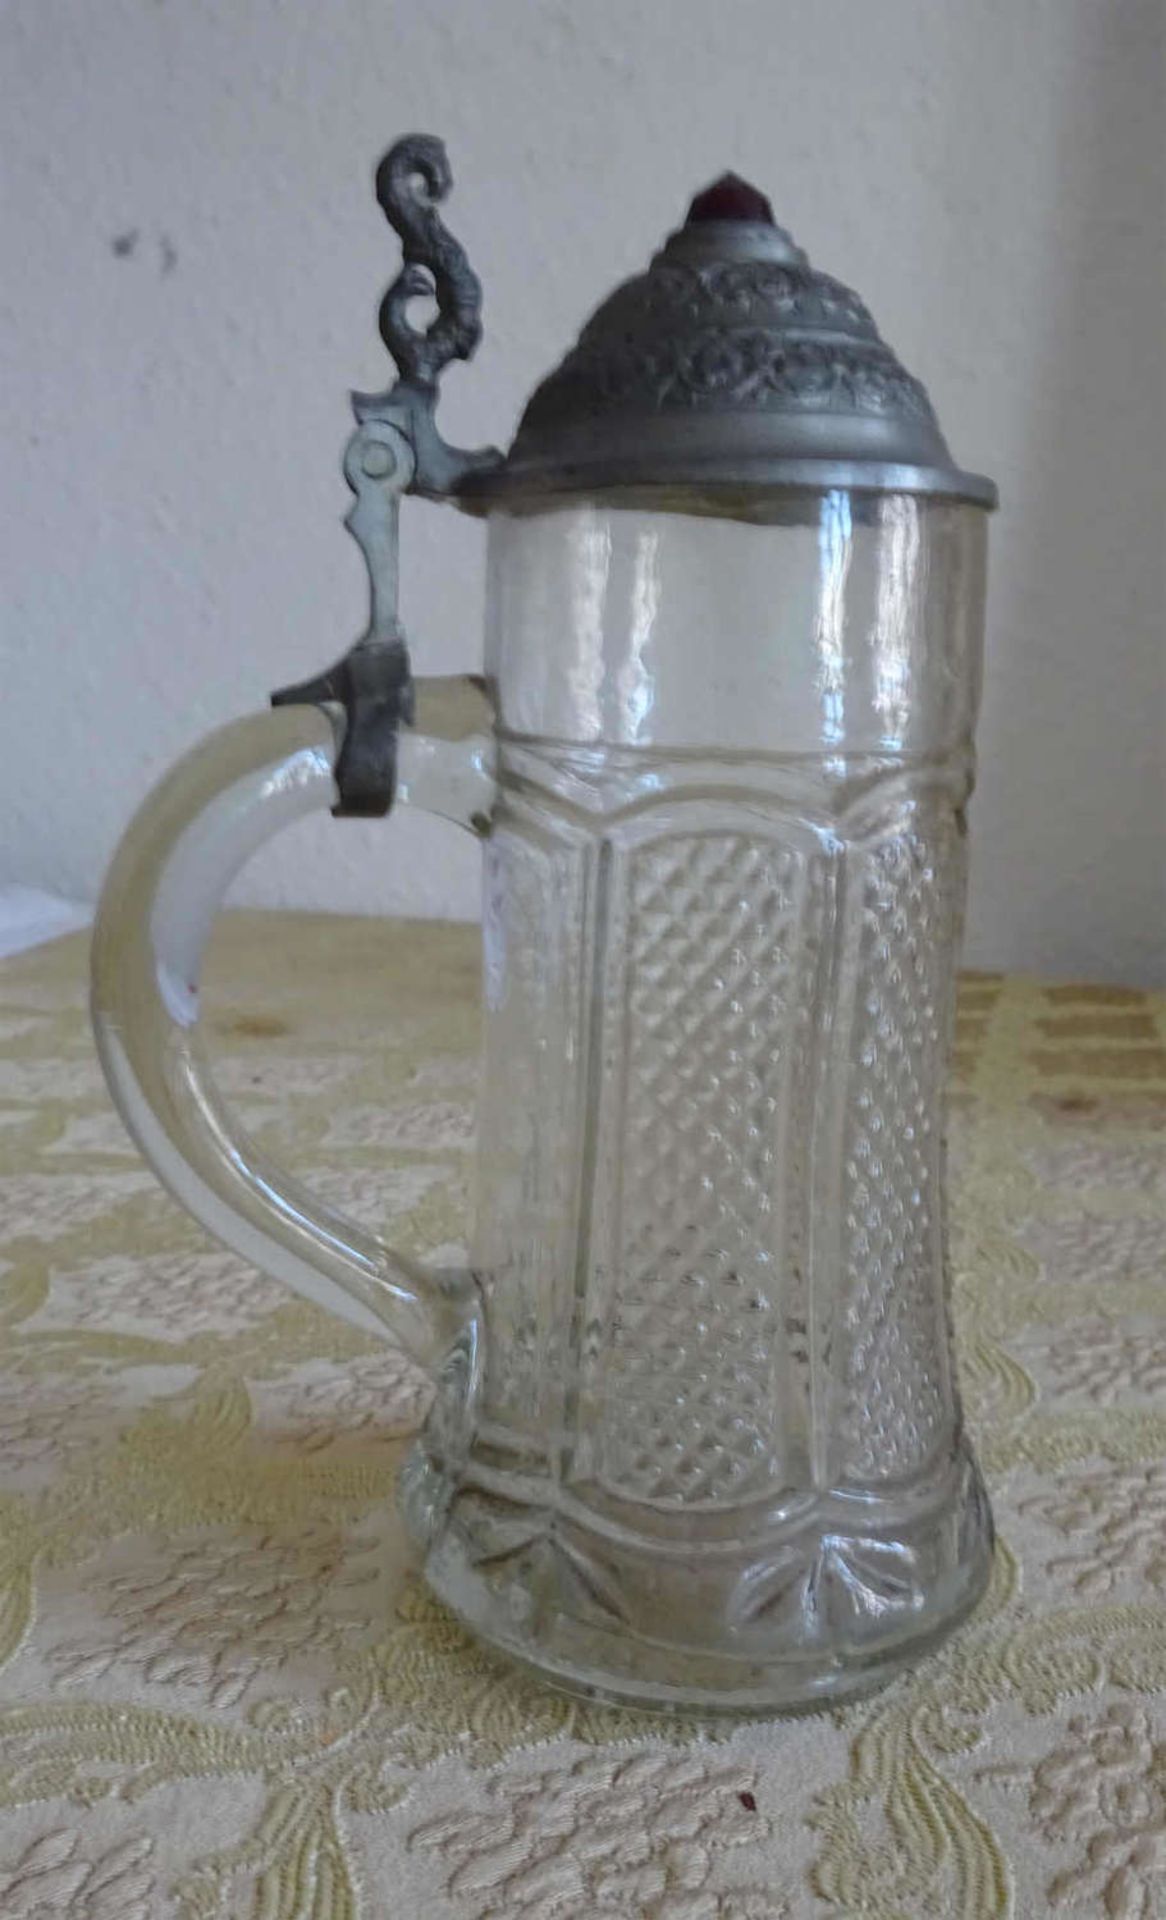 kleiner Pressglas Krug um 1910, Zinndeckel mit rotem Glasstein mittigsmall pressed glass pitcher